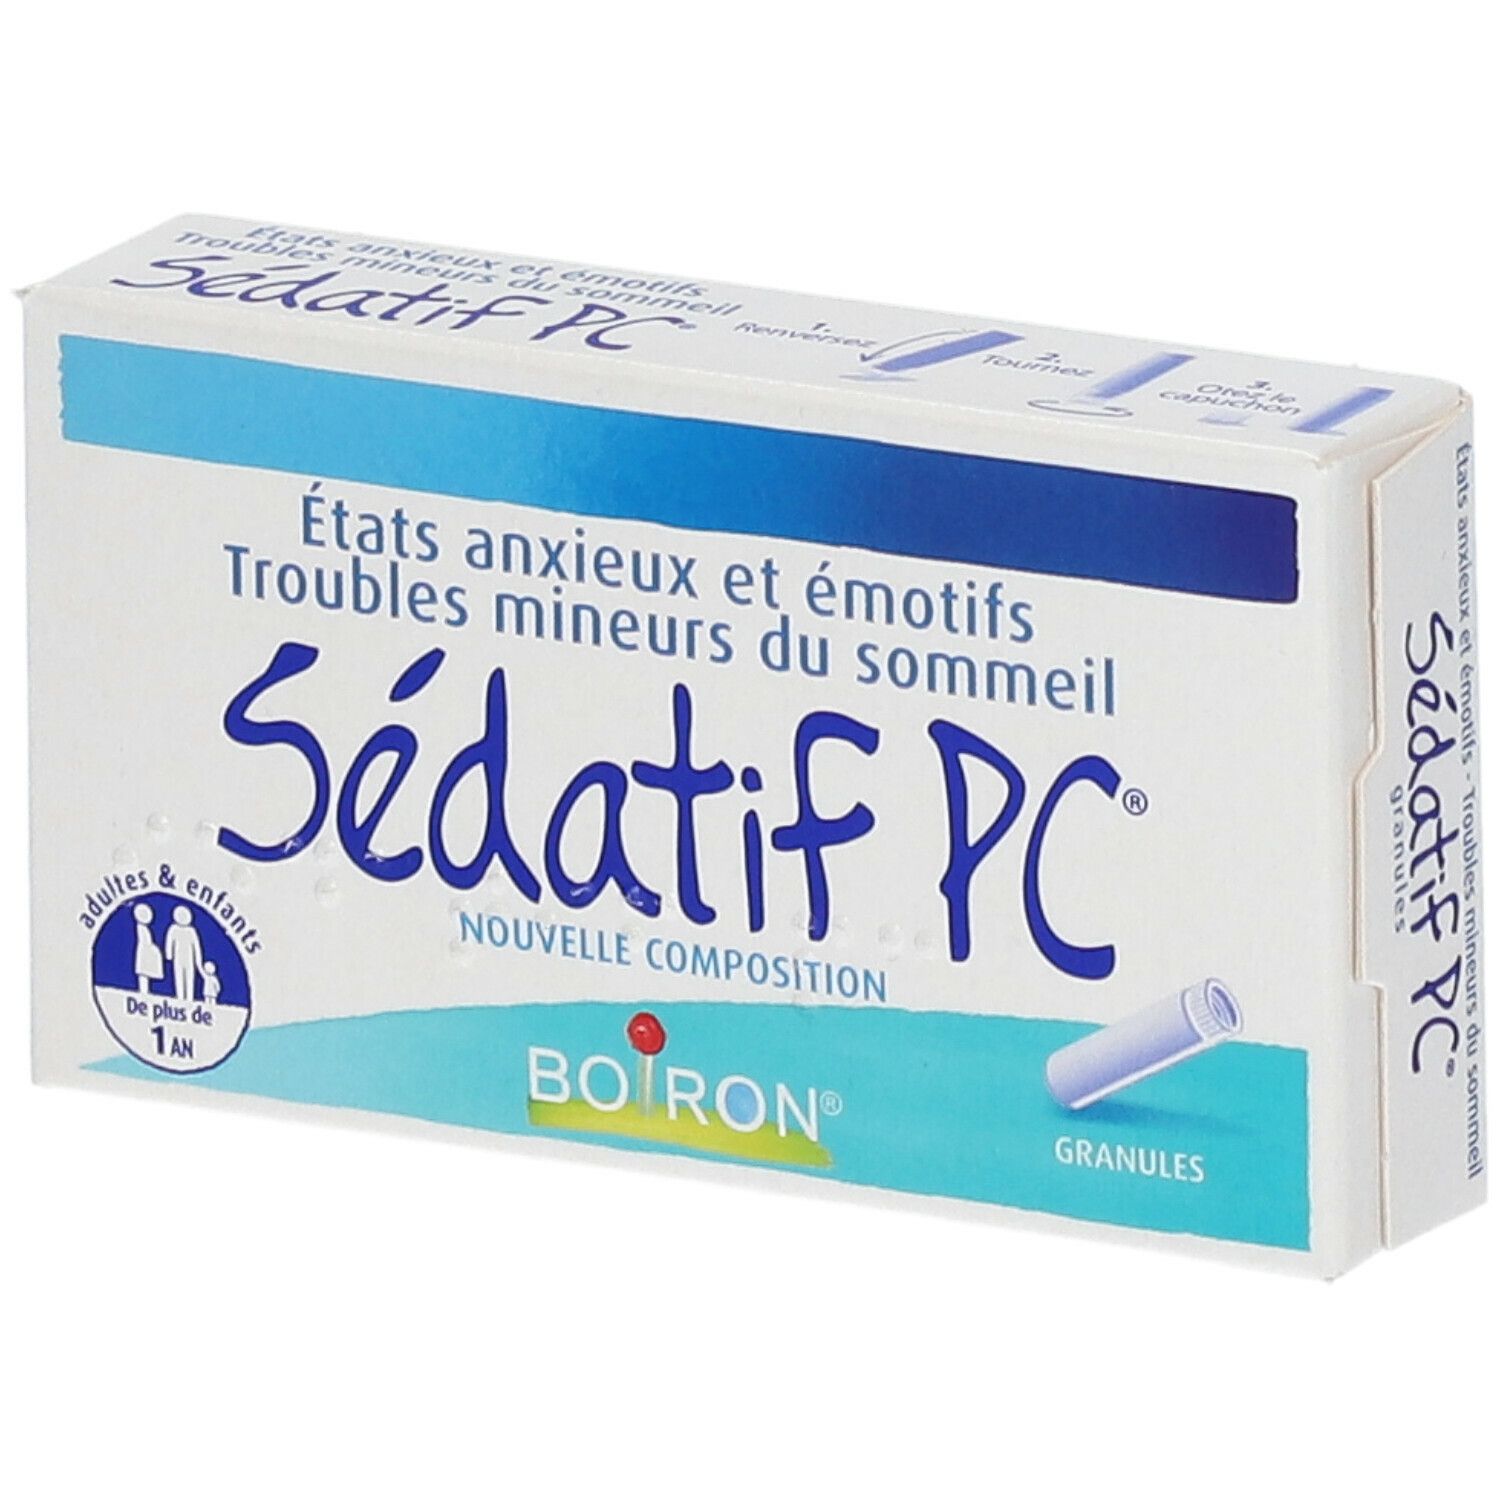 Boiron Sédatif PC® Granules